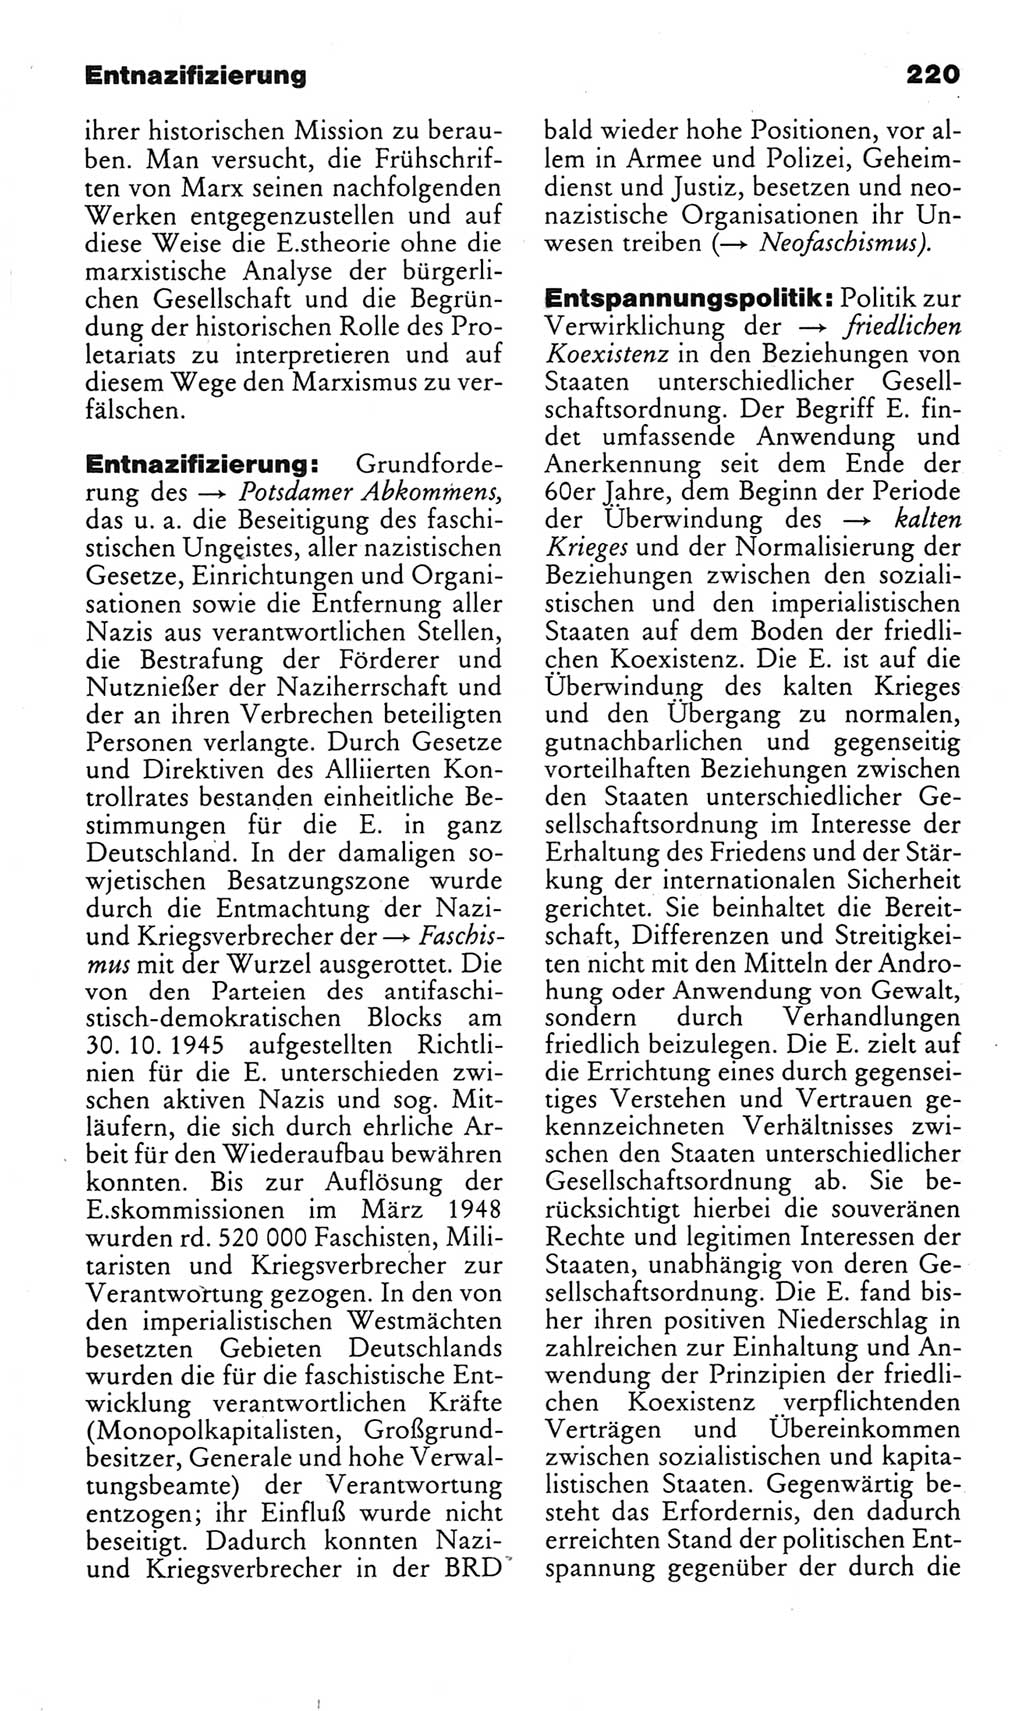 Kleines politisches Wörterbuch [Deutsche Demokratische Republik (DDR)] 1983, Seite 220 (Kl. pol. Wb. DDR 1983, S. 220)